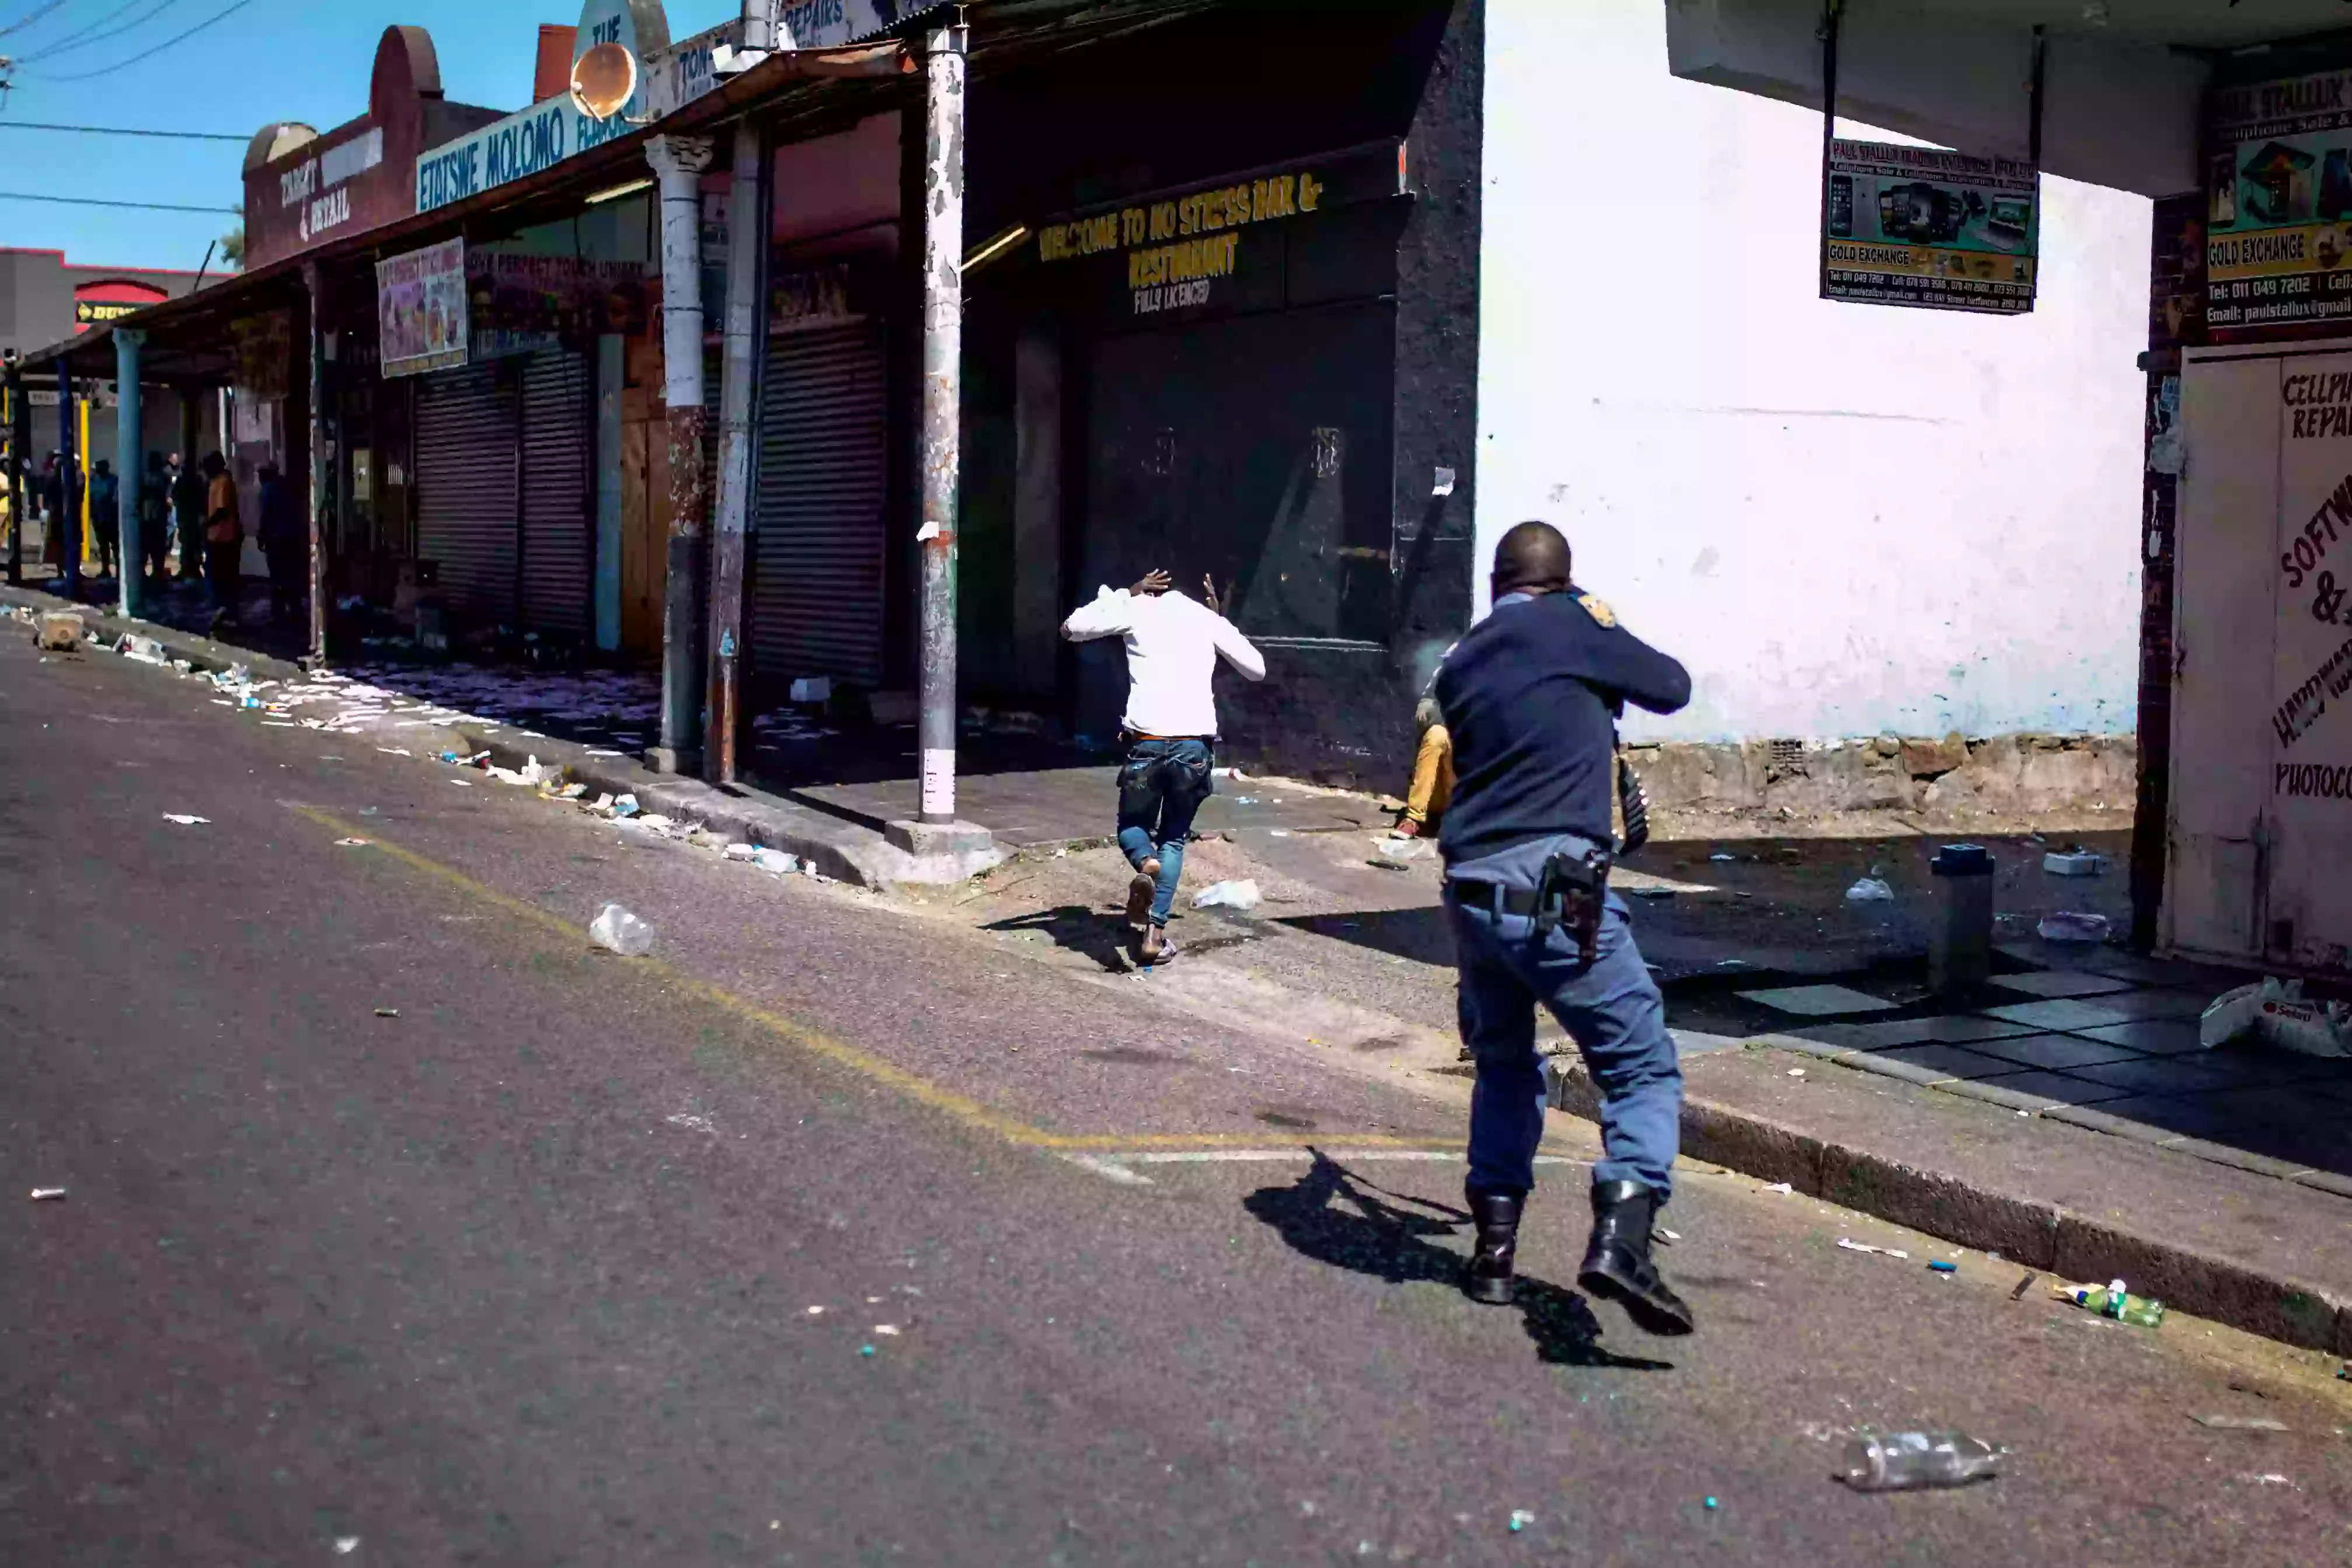 أطلق ضابط شرطة من جنوب إفريقيا النار لتفريق اللصوص أثناء أعمال شغب في ضاحية تورفونتاين بجوهانسبرج